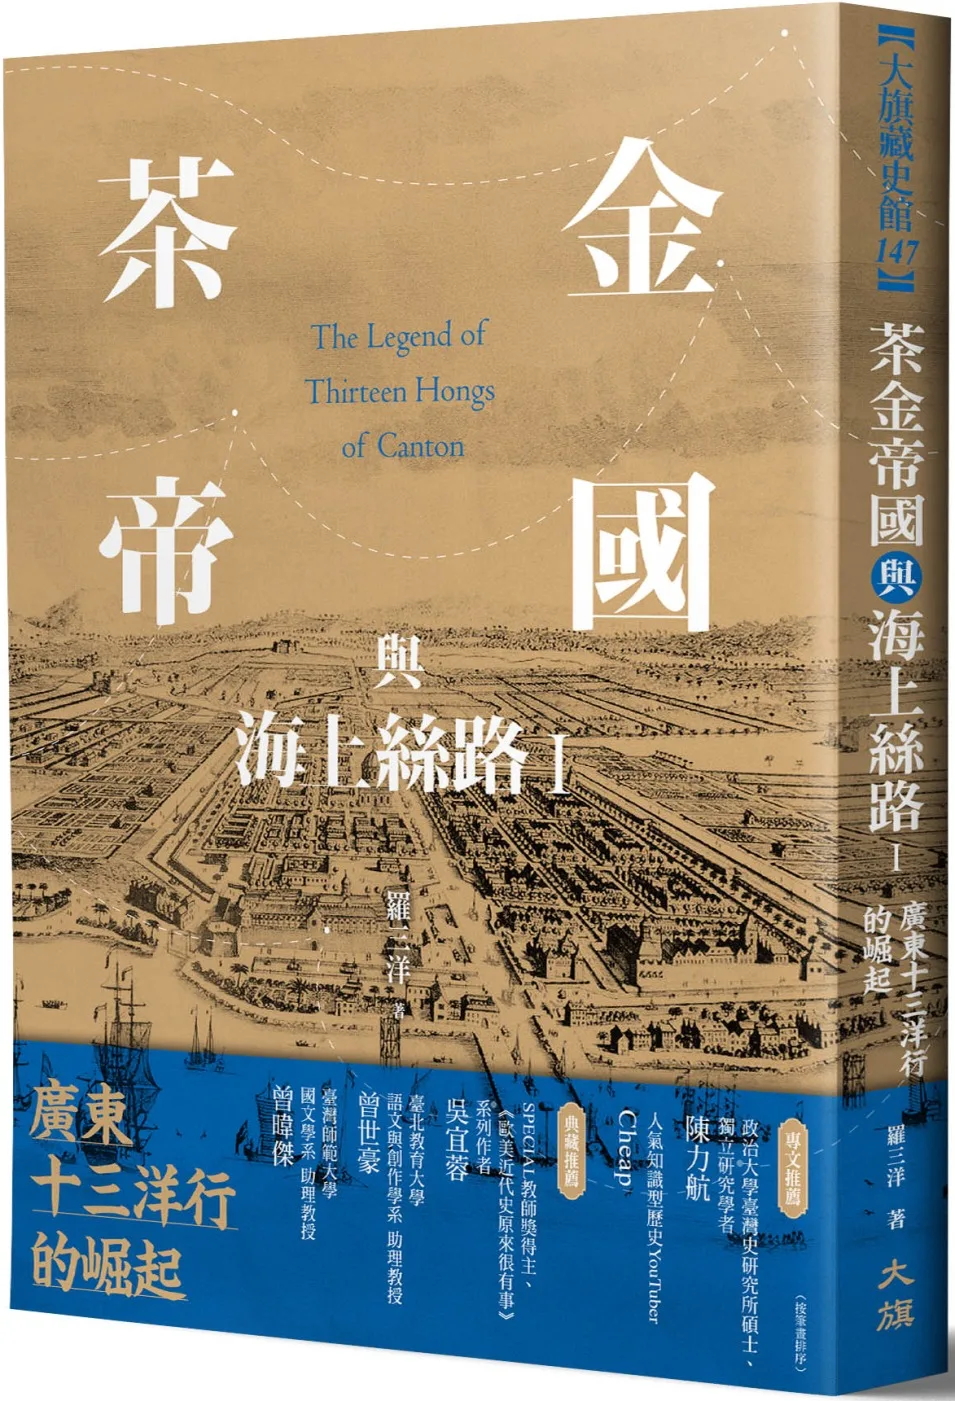 茶金帝國與海上絲路I：廣東十三洋行的崛起